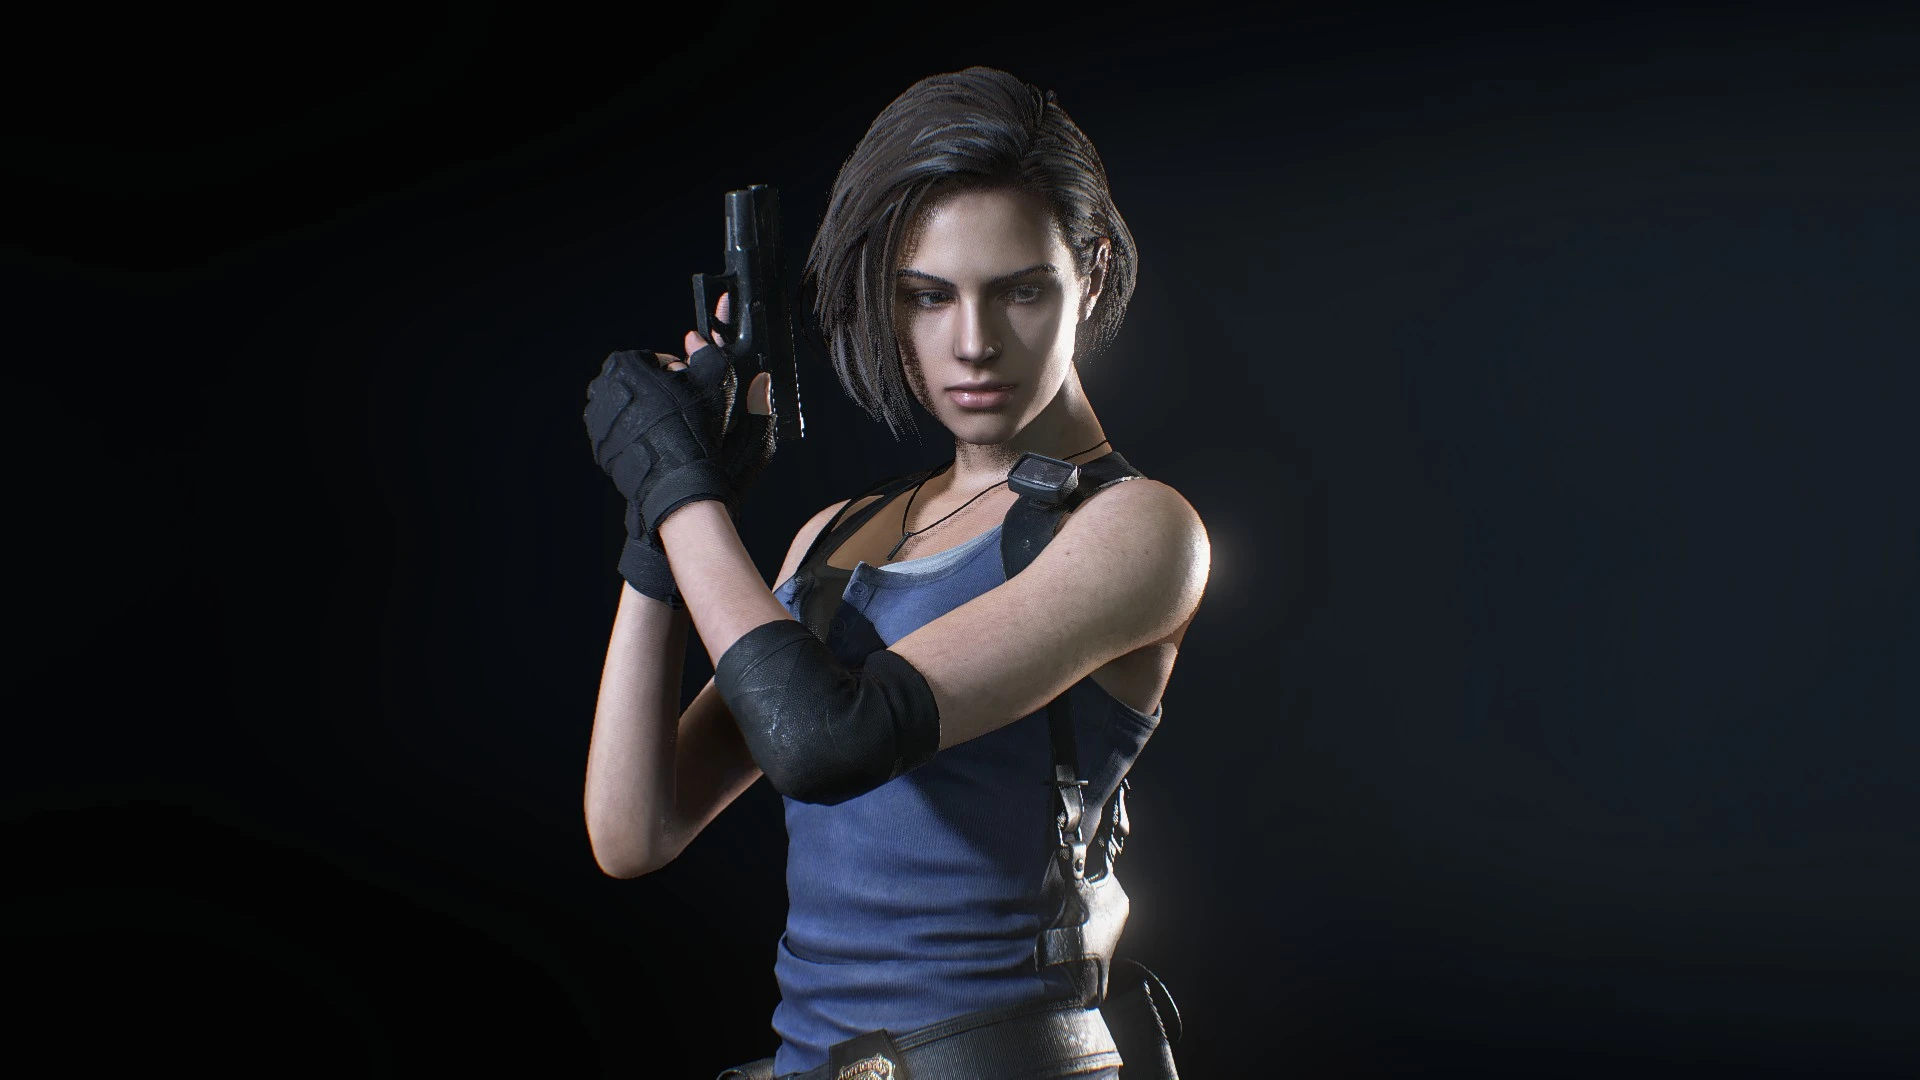 Jill Valentine (Resident Evil 5) - post - Imgur